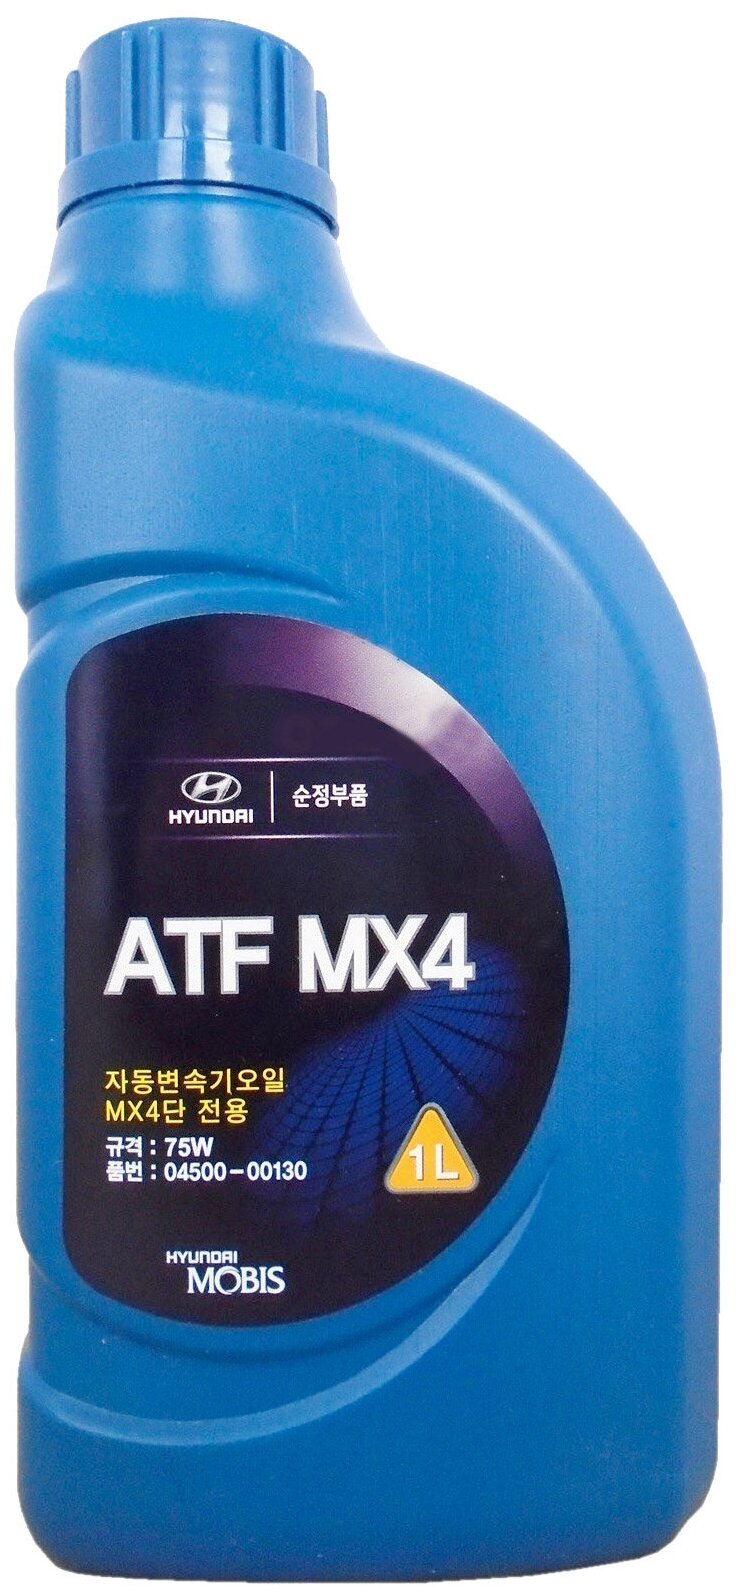 Изображение товара Масло Трансмиссионное Полусинтетическое Atf Mx4 Jws 3314 1L Hyundai-KIA арт. 0450000130